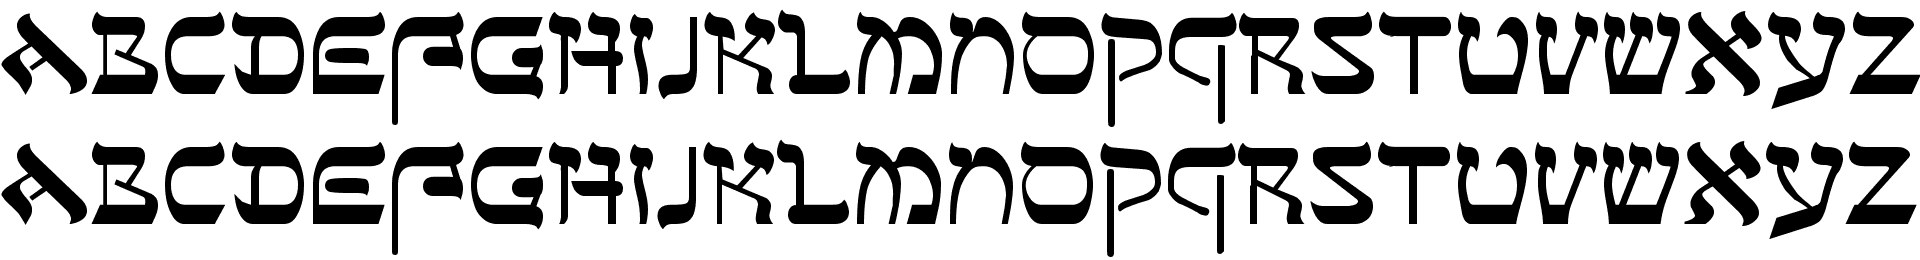 David Hadashah Hebrew Biblical Fonts Free Downloads